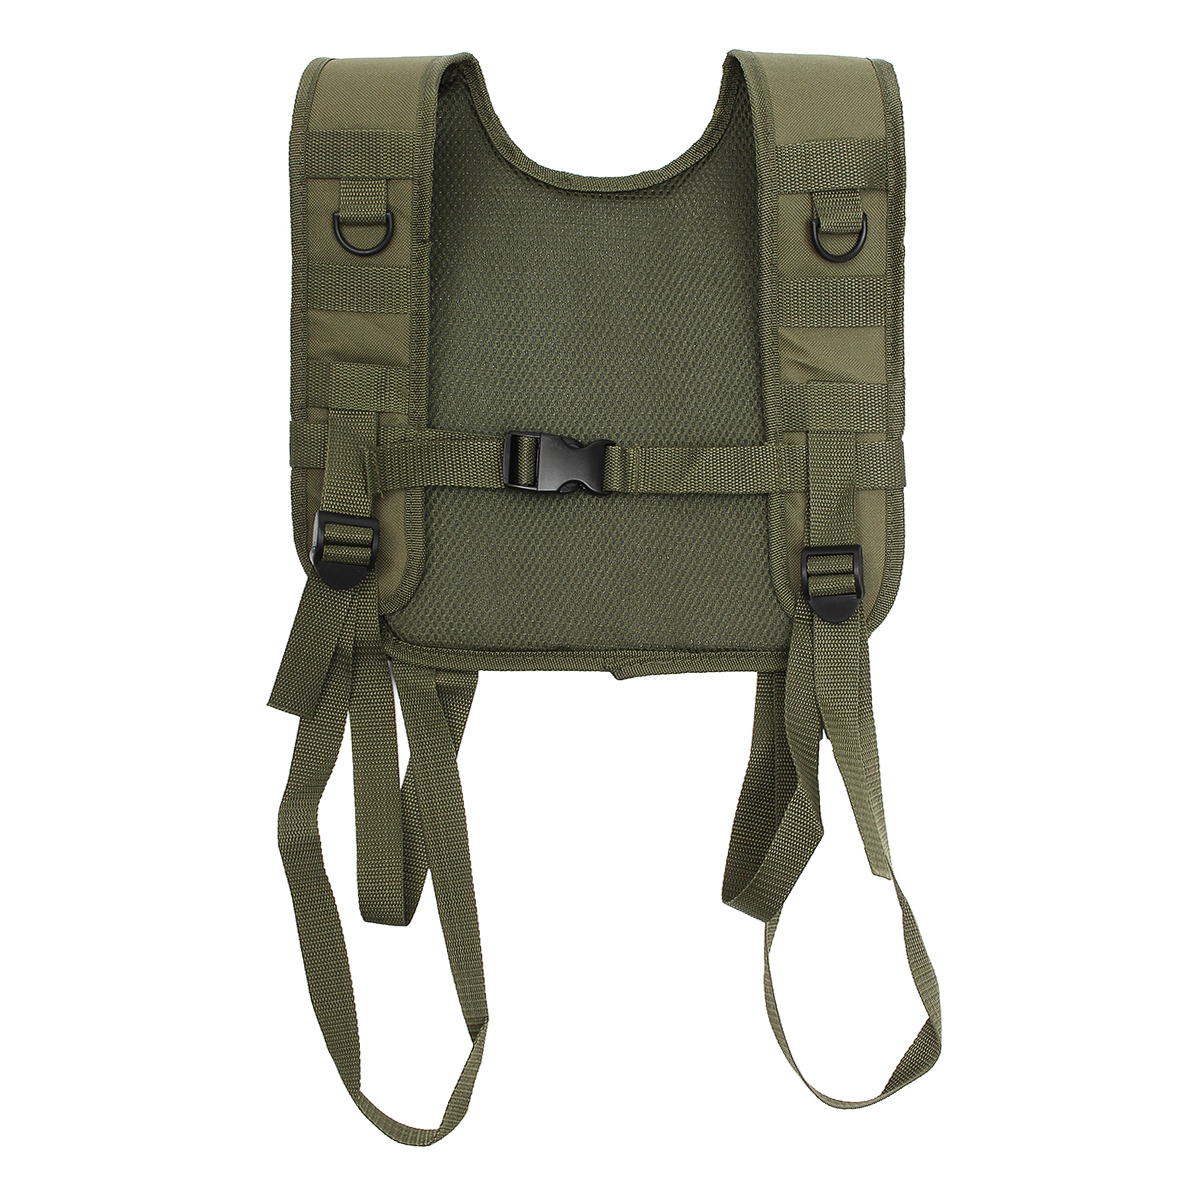 

Military Tactical Adjustable H-Harness Suspenders Tactical Vest for Shoulder Battle Belt Green